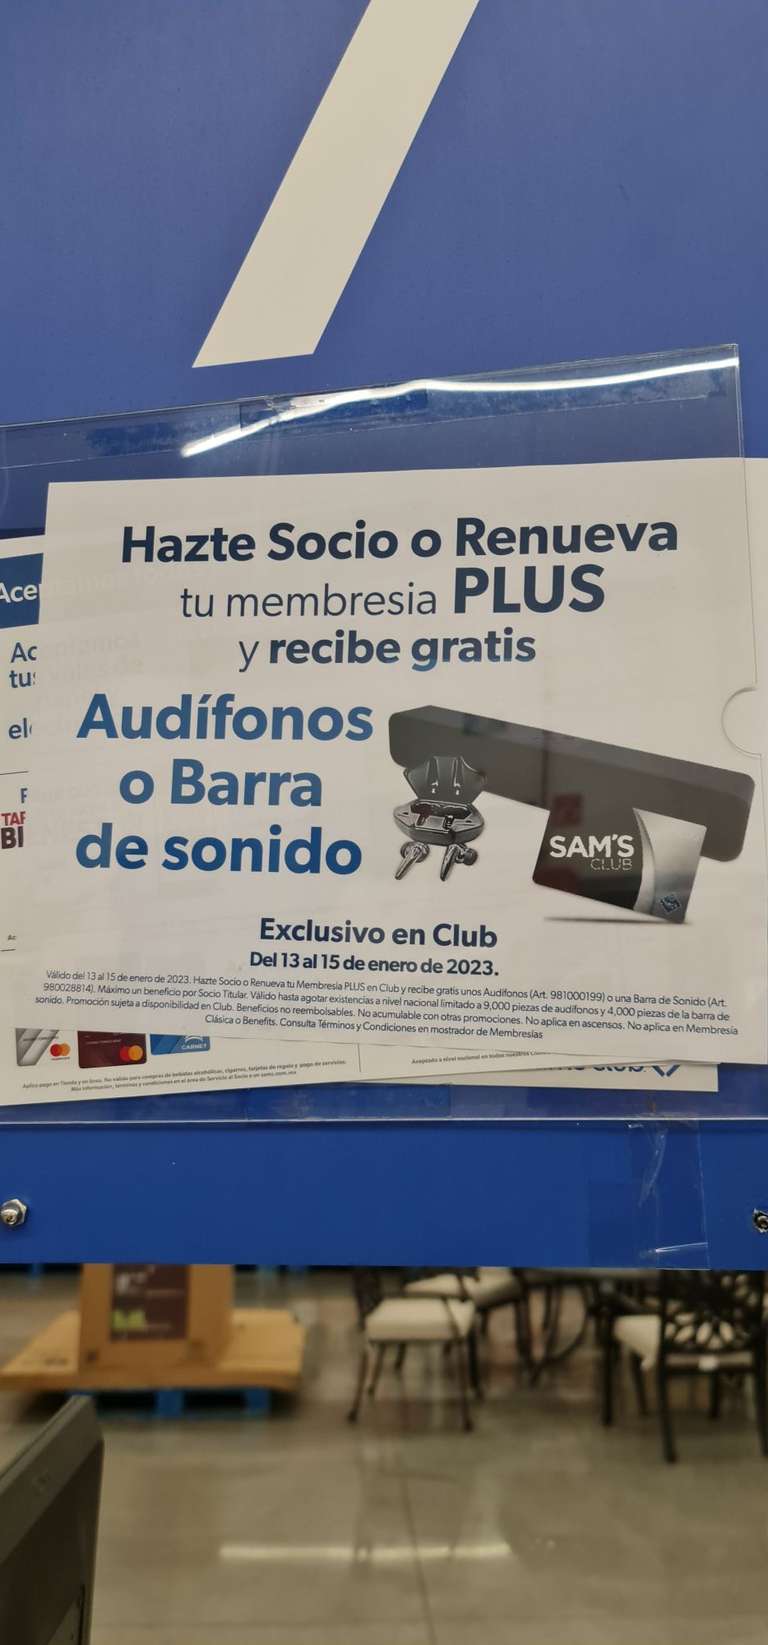 Sam's Club: Gratis barra de sonido o audífonos al renovar o hacerte socio en sams, únicamente membresía plus. EXCLUSIVO EN CLUB